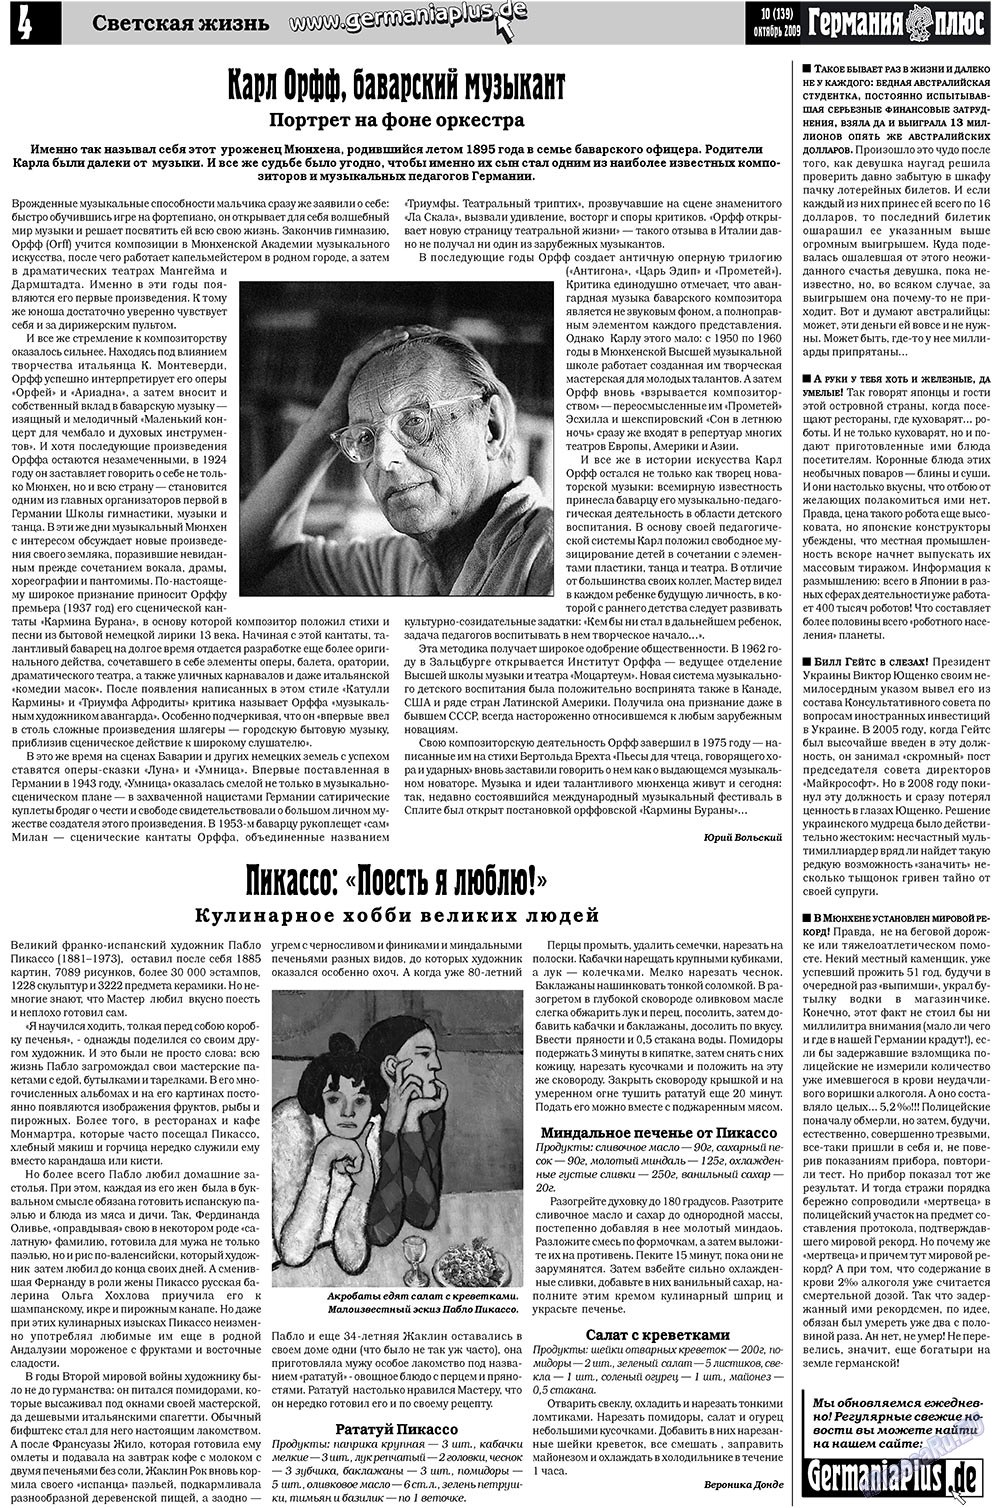 Германия плюс (газета). 2009 год, номер 10, стр. 4